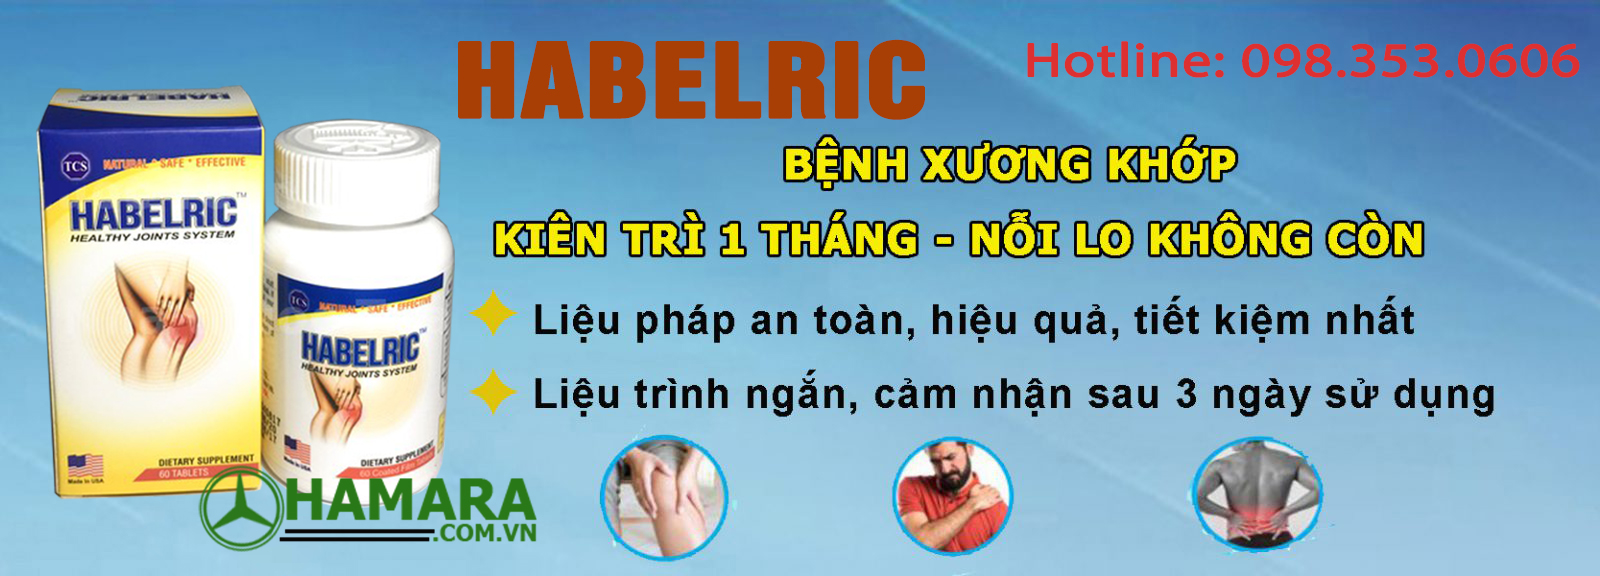 thuốc bổ Habelric, Habelric có hiệu quả không, Habelric bán ở đâu, thuốc Habelric, công dụng của Habelric, thuốc Habelric bán ở đâu, Habelric xuất xứ, công dụng Habelric, Habelric giá bao nhiêu tiền, Habelric của nước nào, đánh giá Habelric, giá bán Habelric, thuoc Habelric, đánh giá sản phẩm Habelric, kem Habelric mua o dau, Habelric lazada, đánh giá thuốc Habelric, Habelric bao nhiêu tiền, thuốc trị Habelric, Habelric dung co tot khong, Habelric giá	